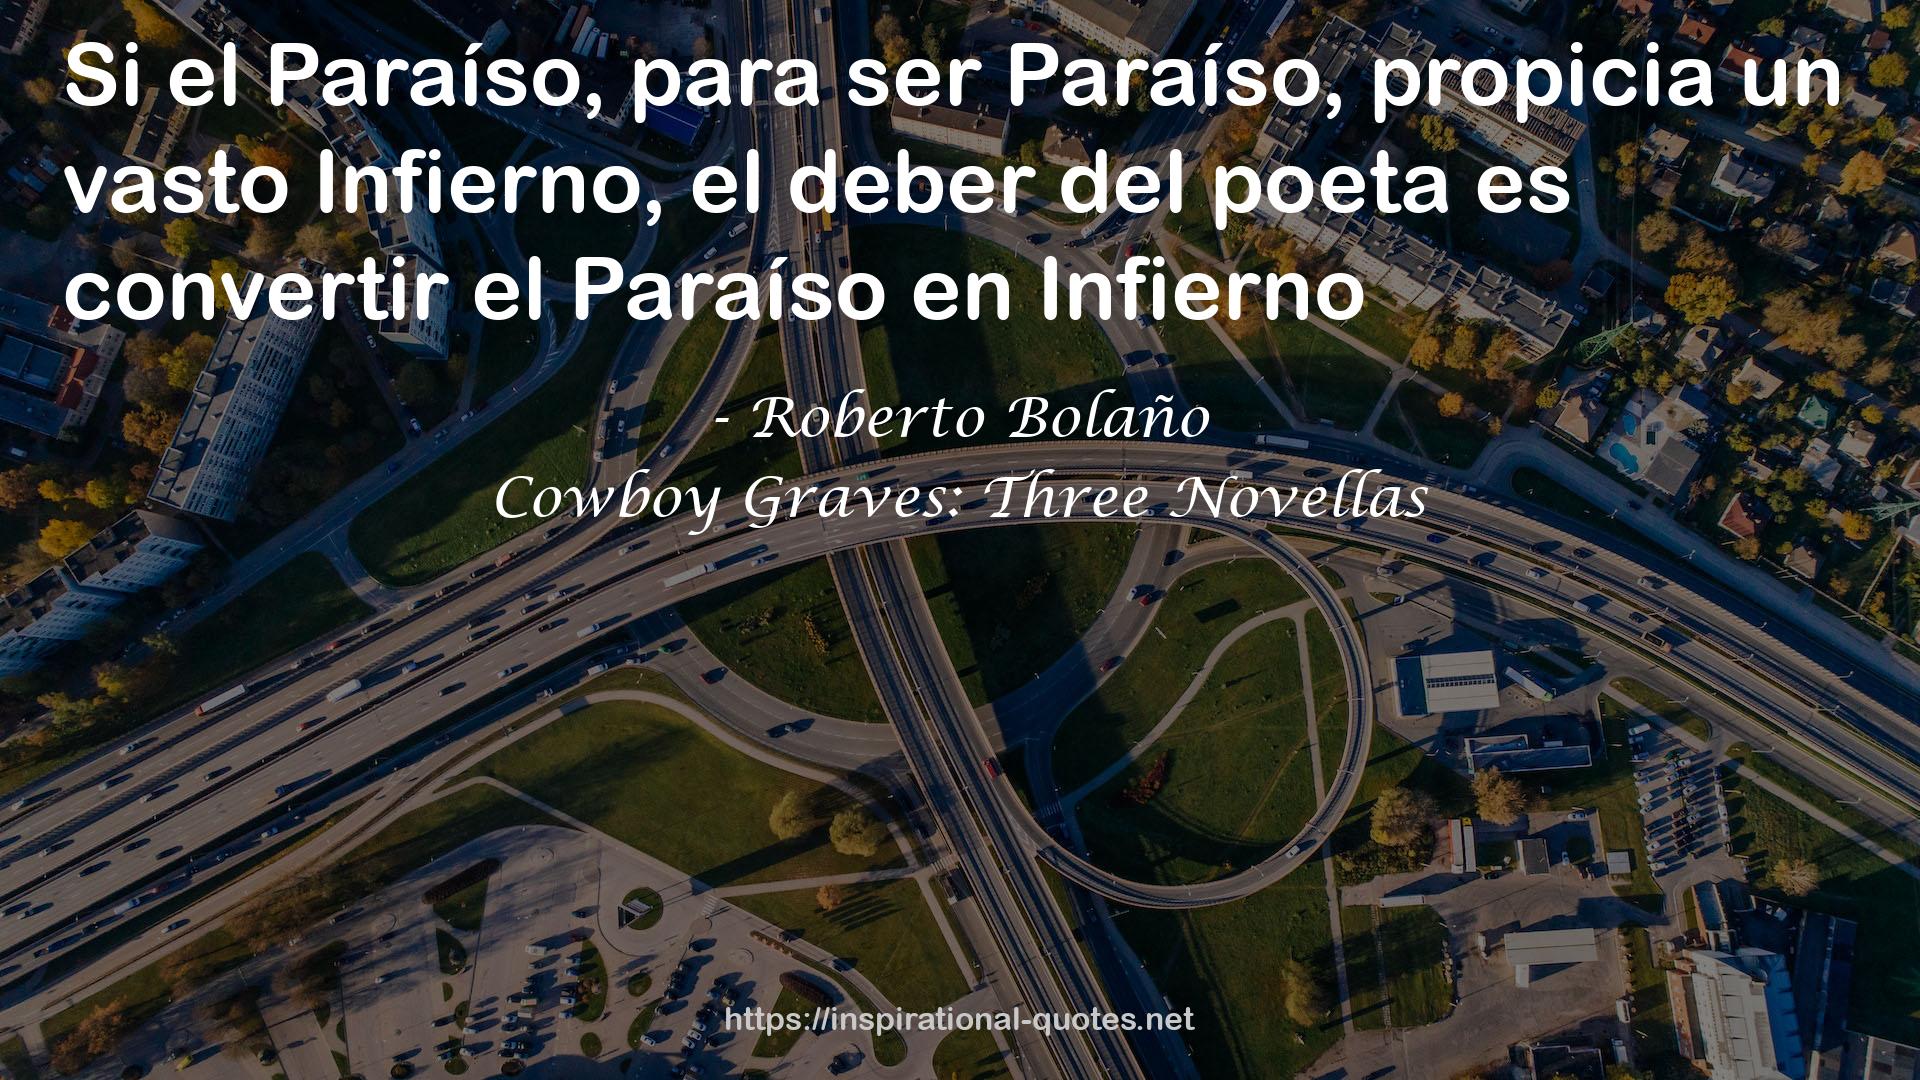 Cowboy Graves: Three Novellas QUOTES